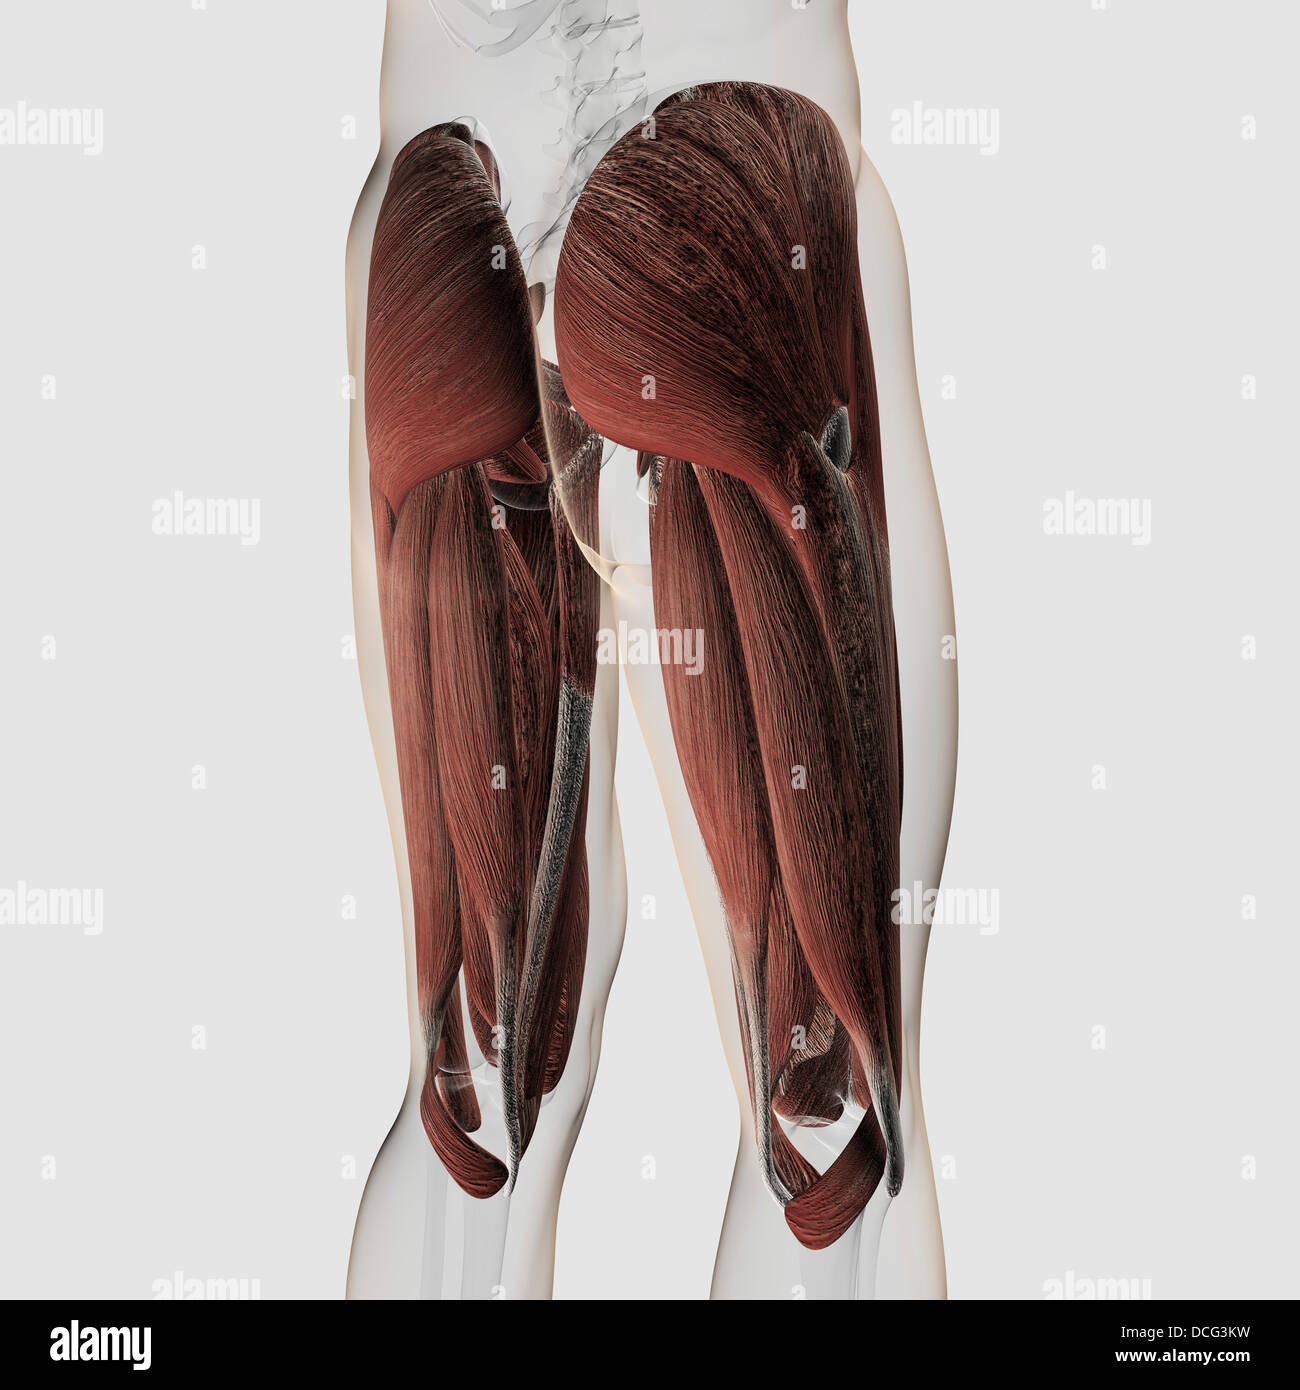 Maschio anatomia muscolare delle gambe umane, vista posteriore. Foto Stock